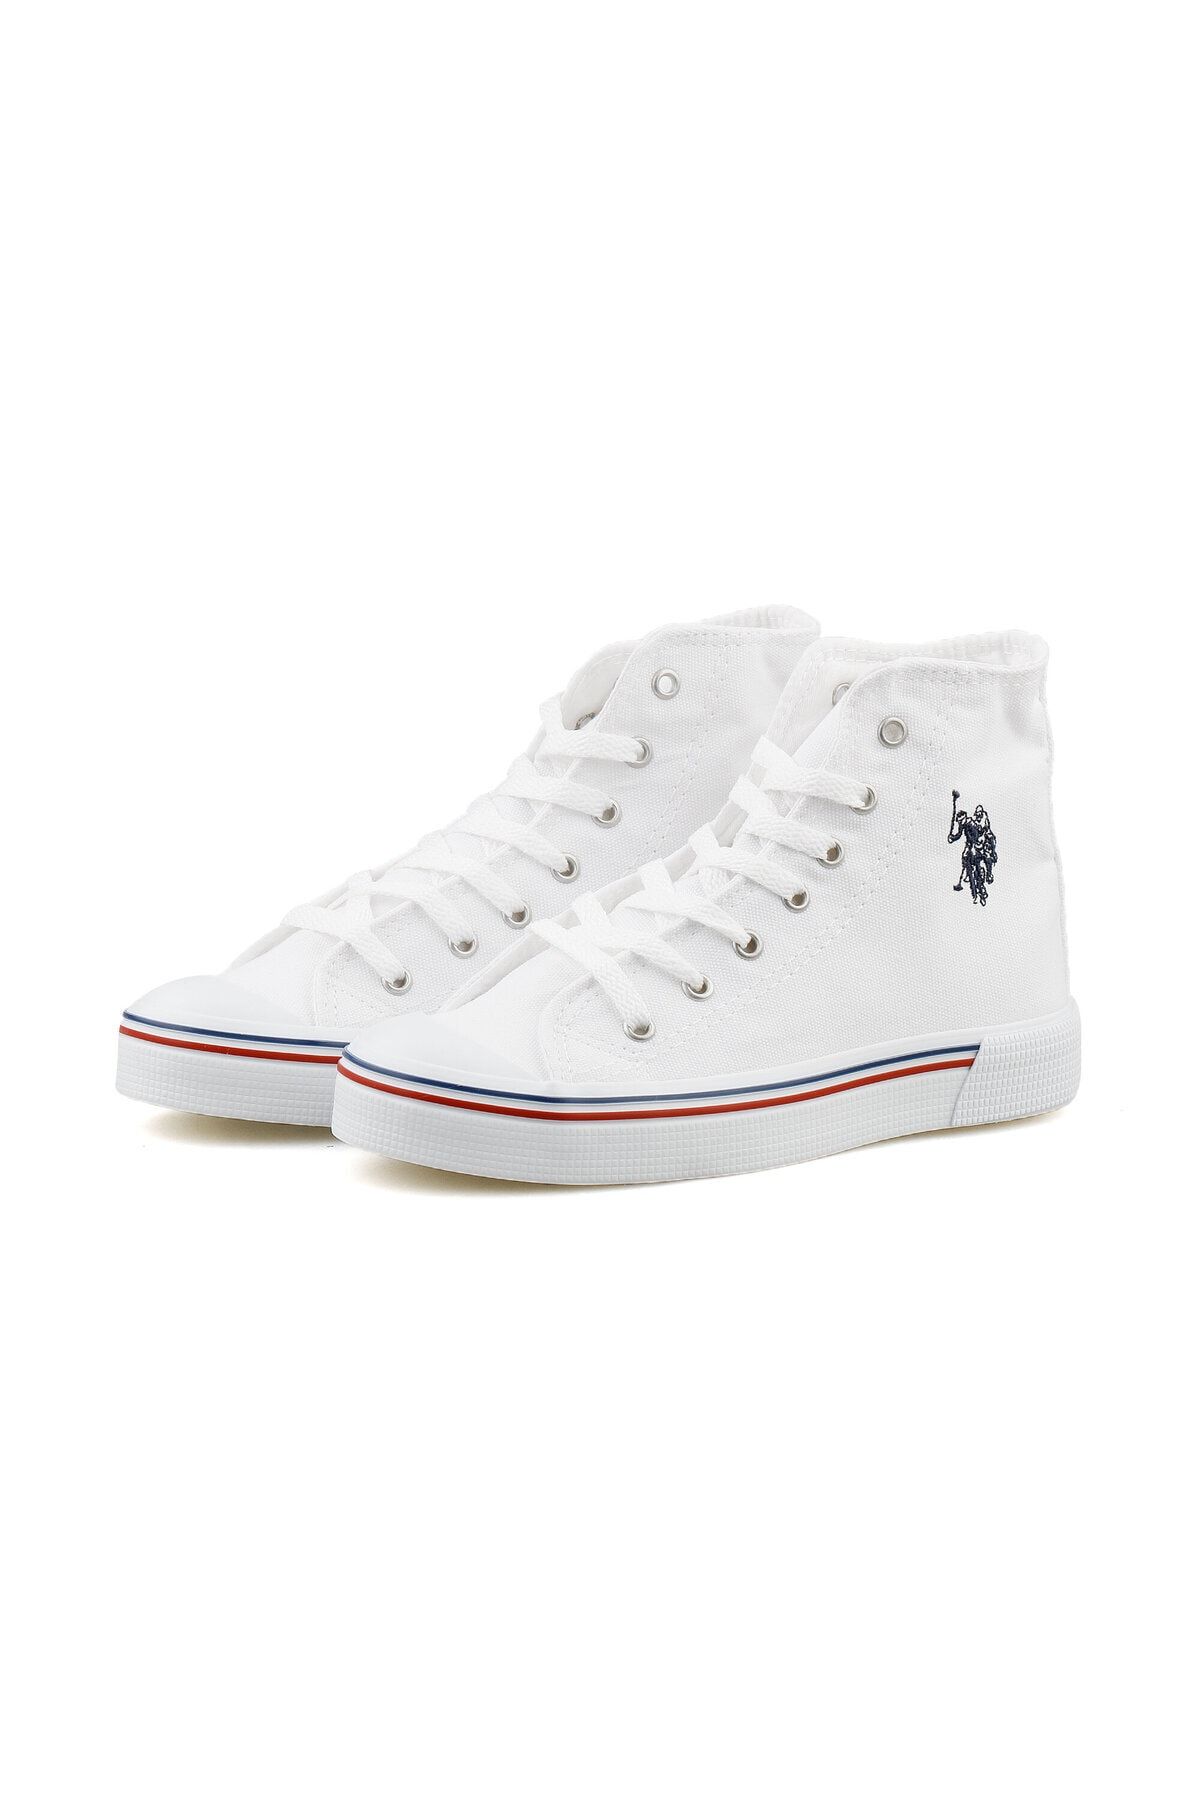 U.S.Polo Assn. White Kadın Günlük Ayakkabı 101341038 Beyaz